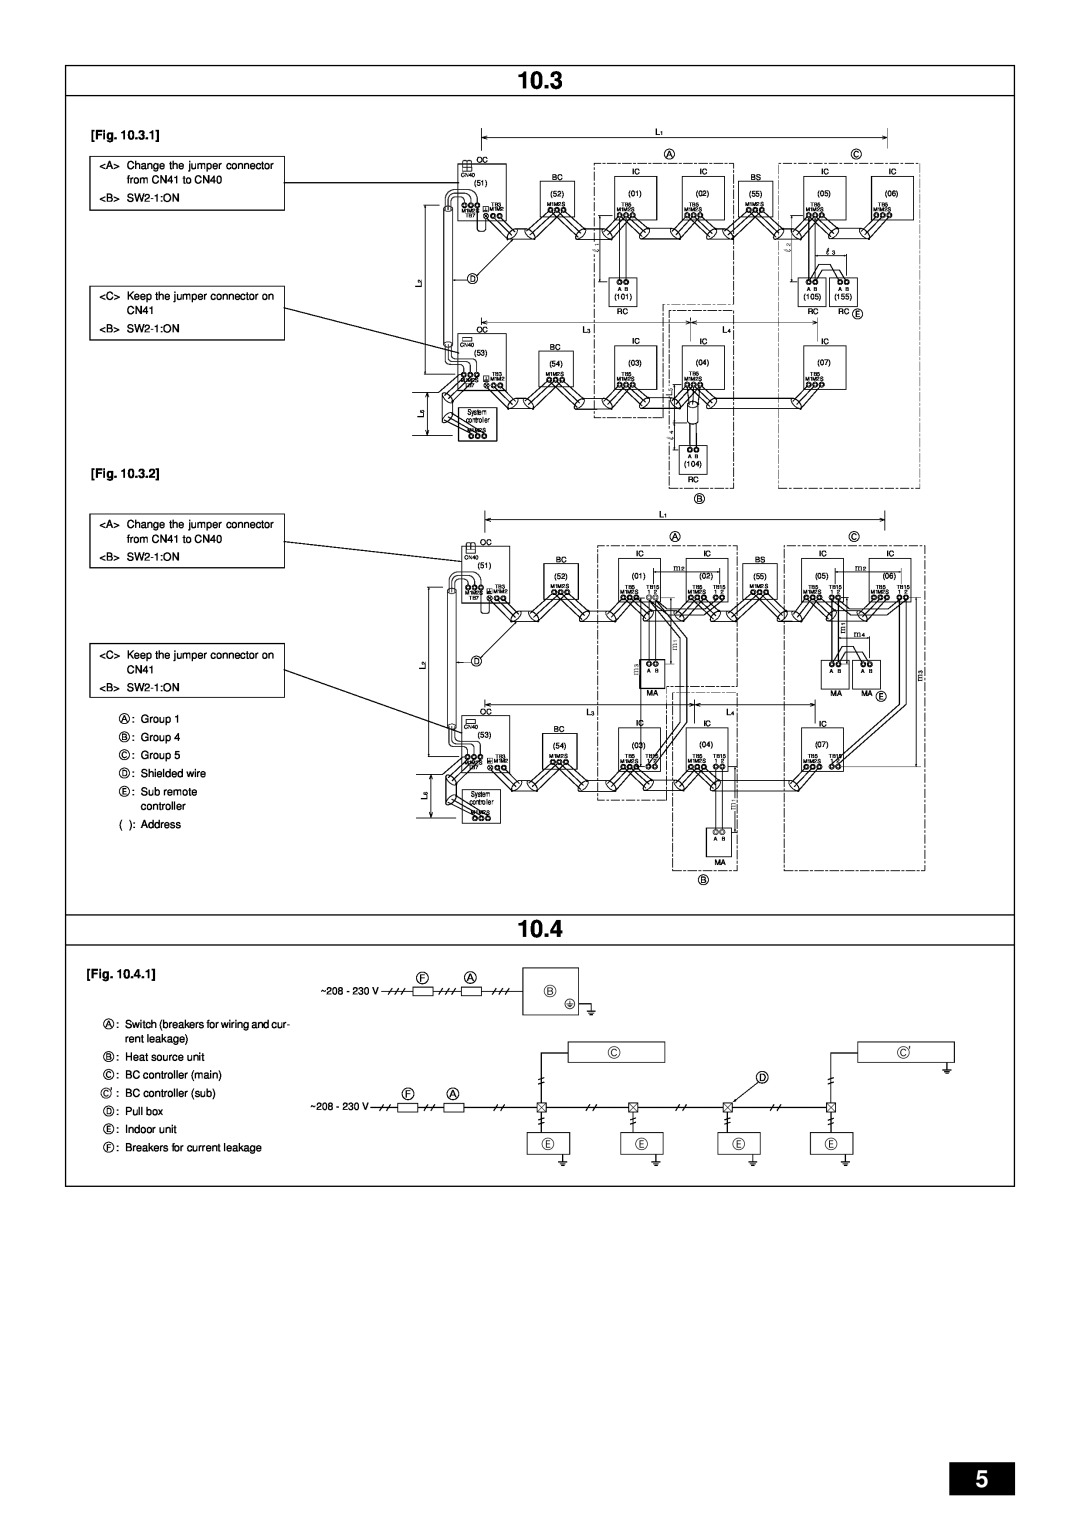 Bell Sports PQRY-P72-96TGMU-A installation manual 10.3, 10.4 